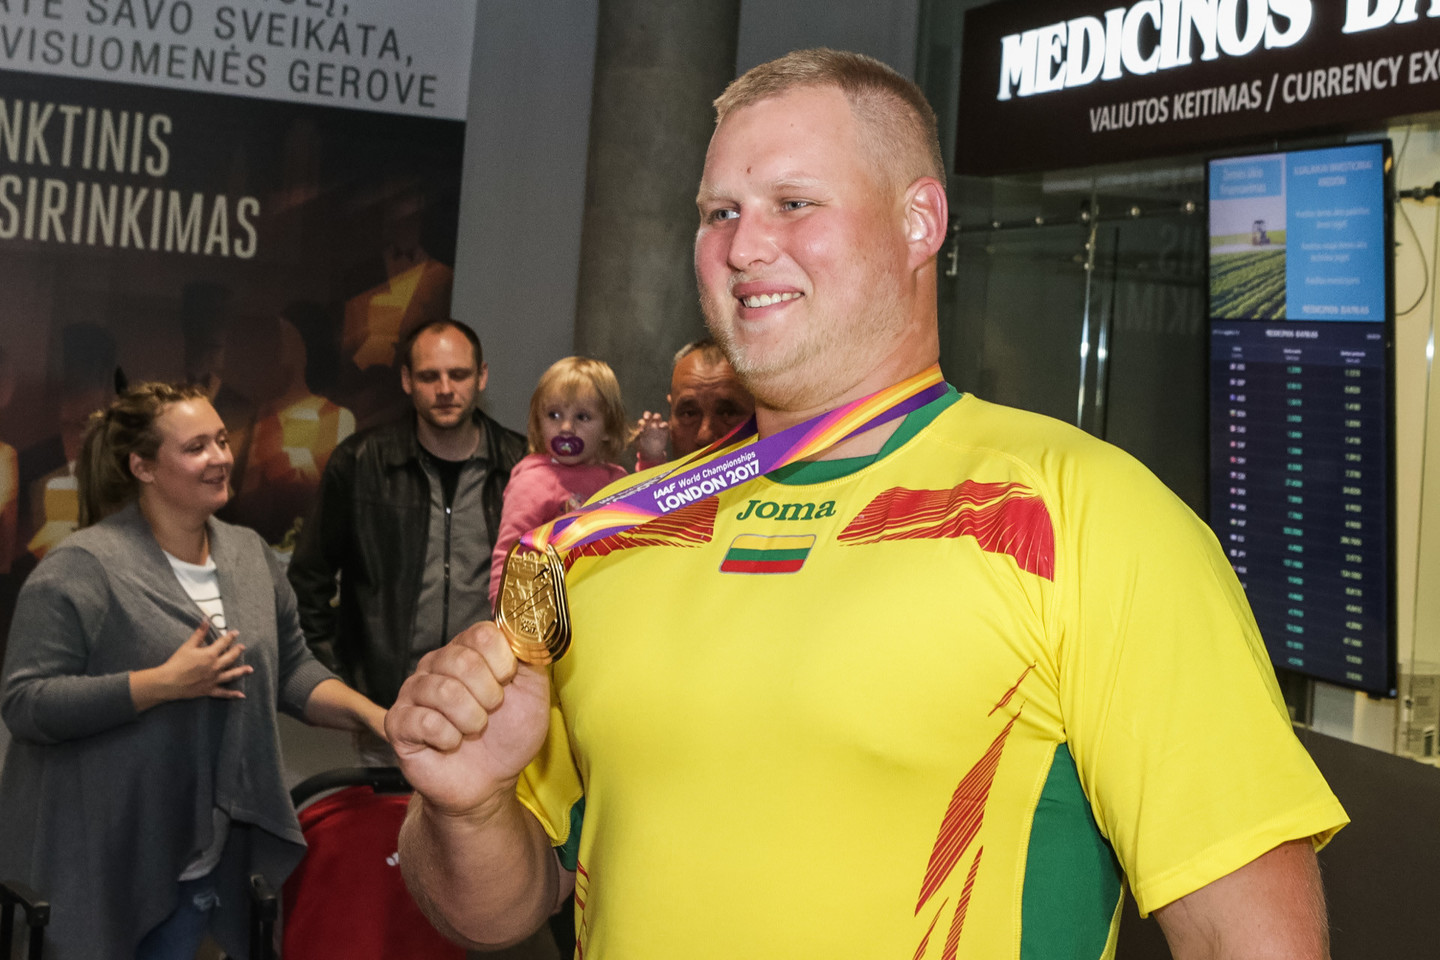  Į Lietuvą pasaulio čempionato auksą parvežęs A.Gudžius sulaukė gausaus palaikymo.<br> G.Bitvinsko nuotr.